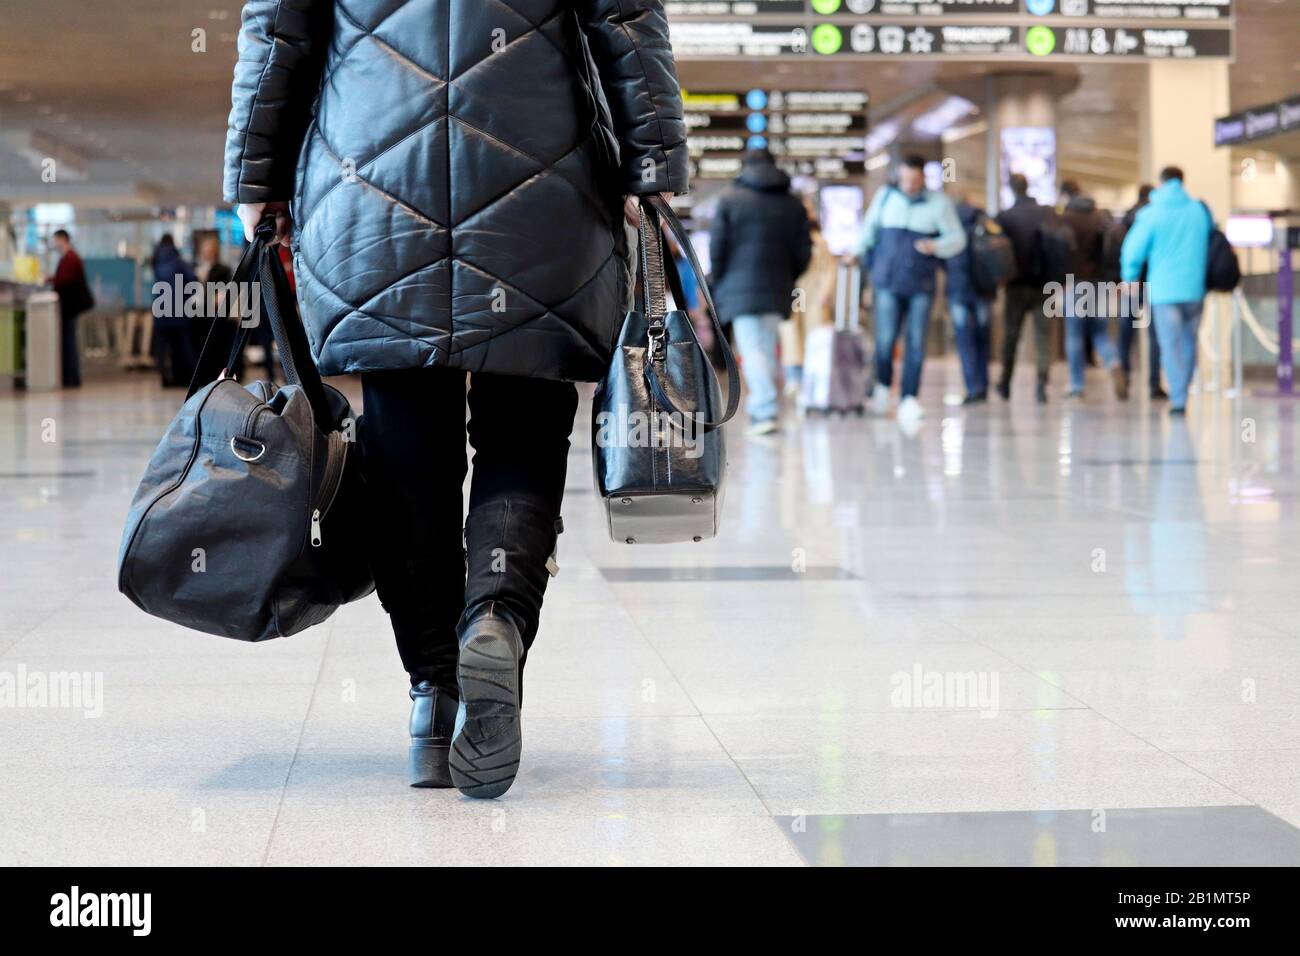 Femme avec des bagages à main marchant à l'intérieur du bâtiment de l'aéroport sur l'arrière-plan des passagers. Concept de voyageur avant de flotter Banque D'Images